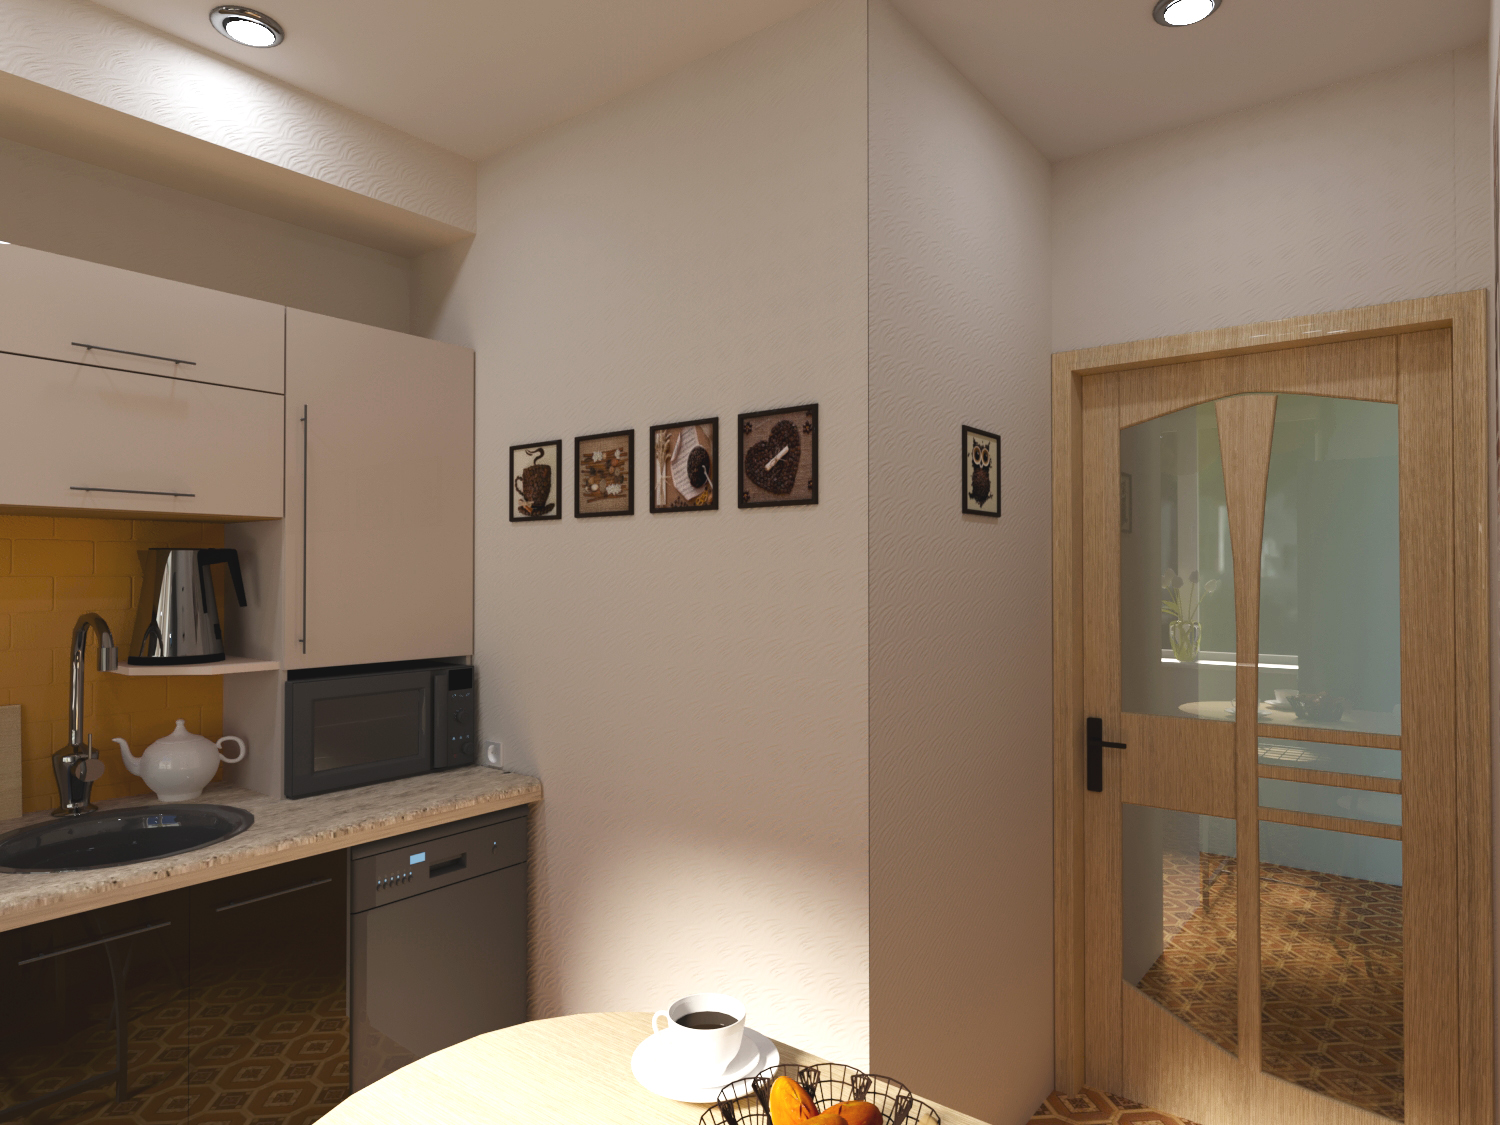 रसोई पाँच वर्गों 3d max corona render में प्रस्तुत छवि